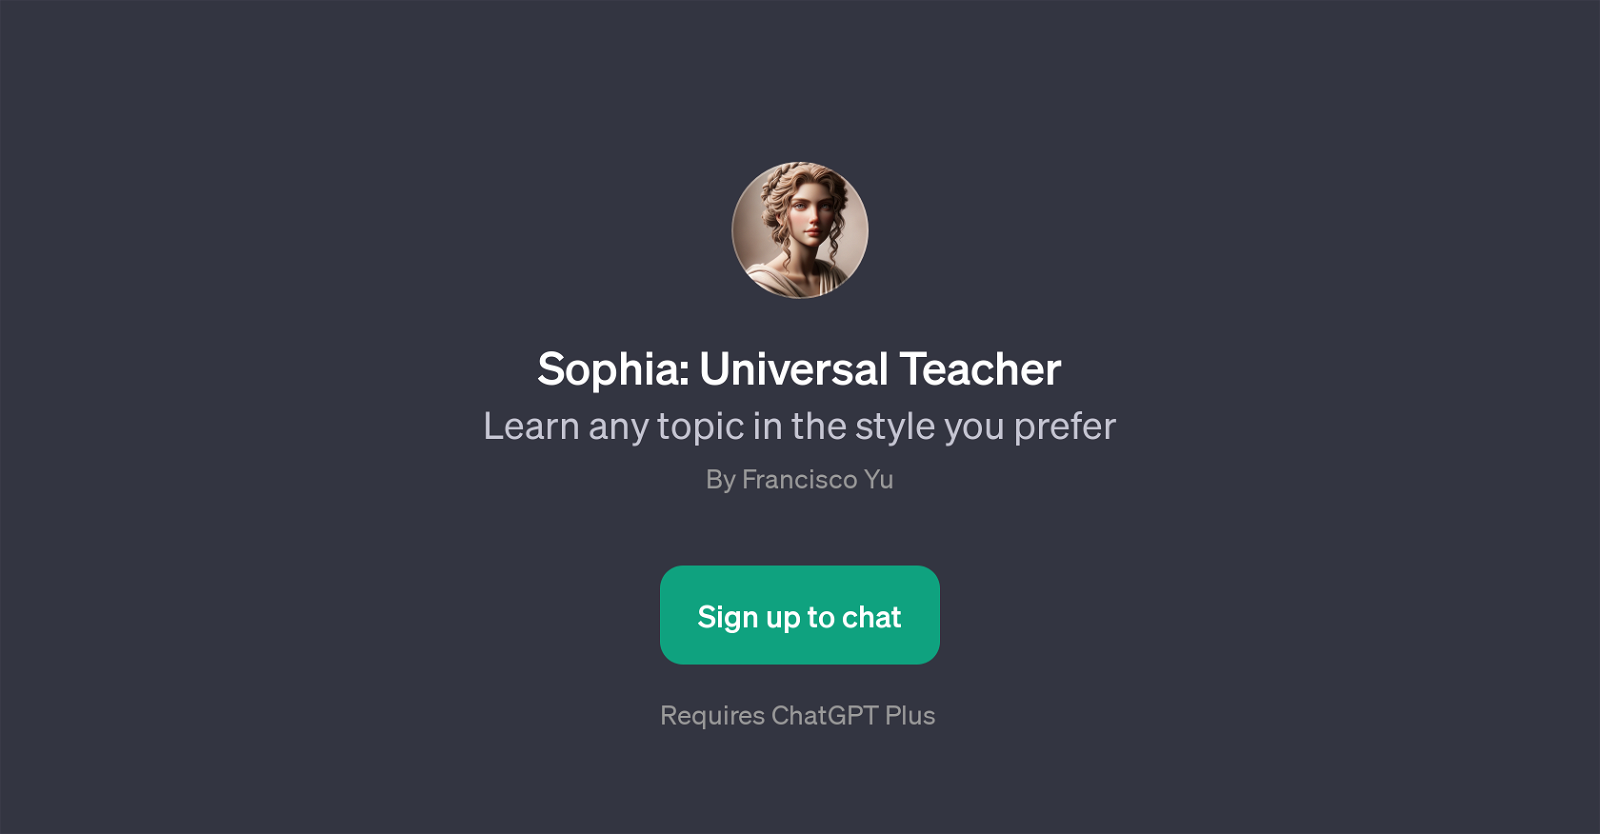 Sophia: Universal Teacher website